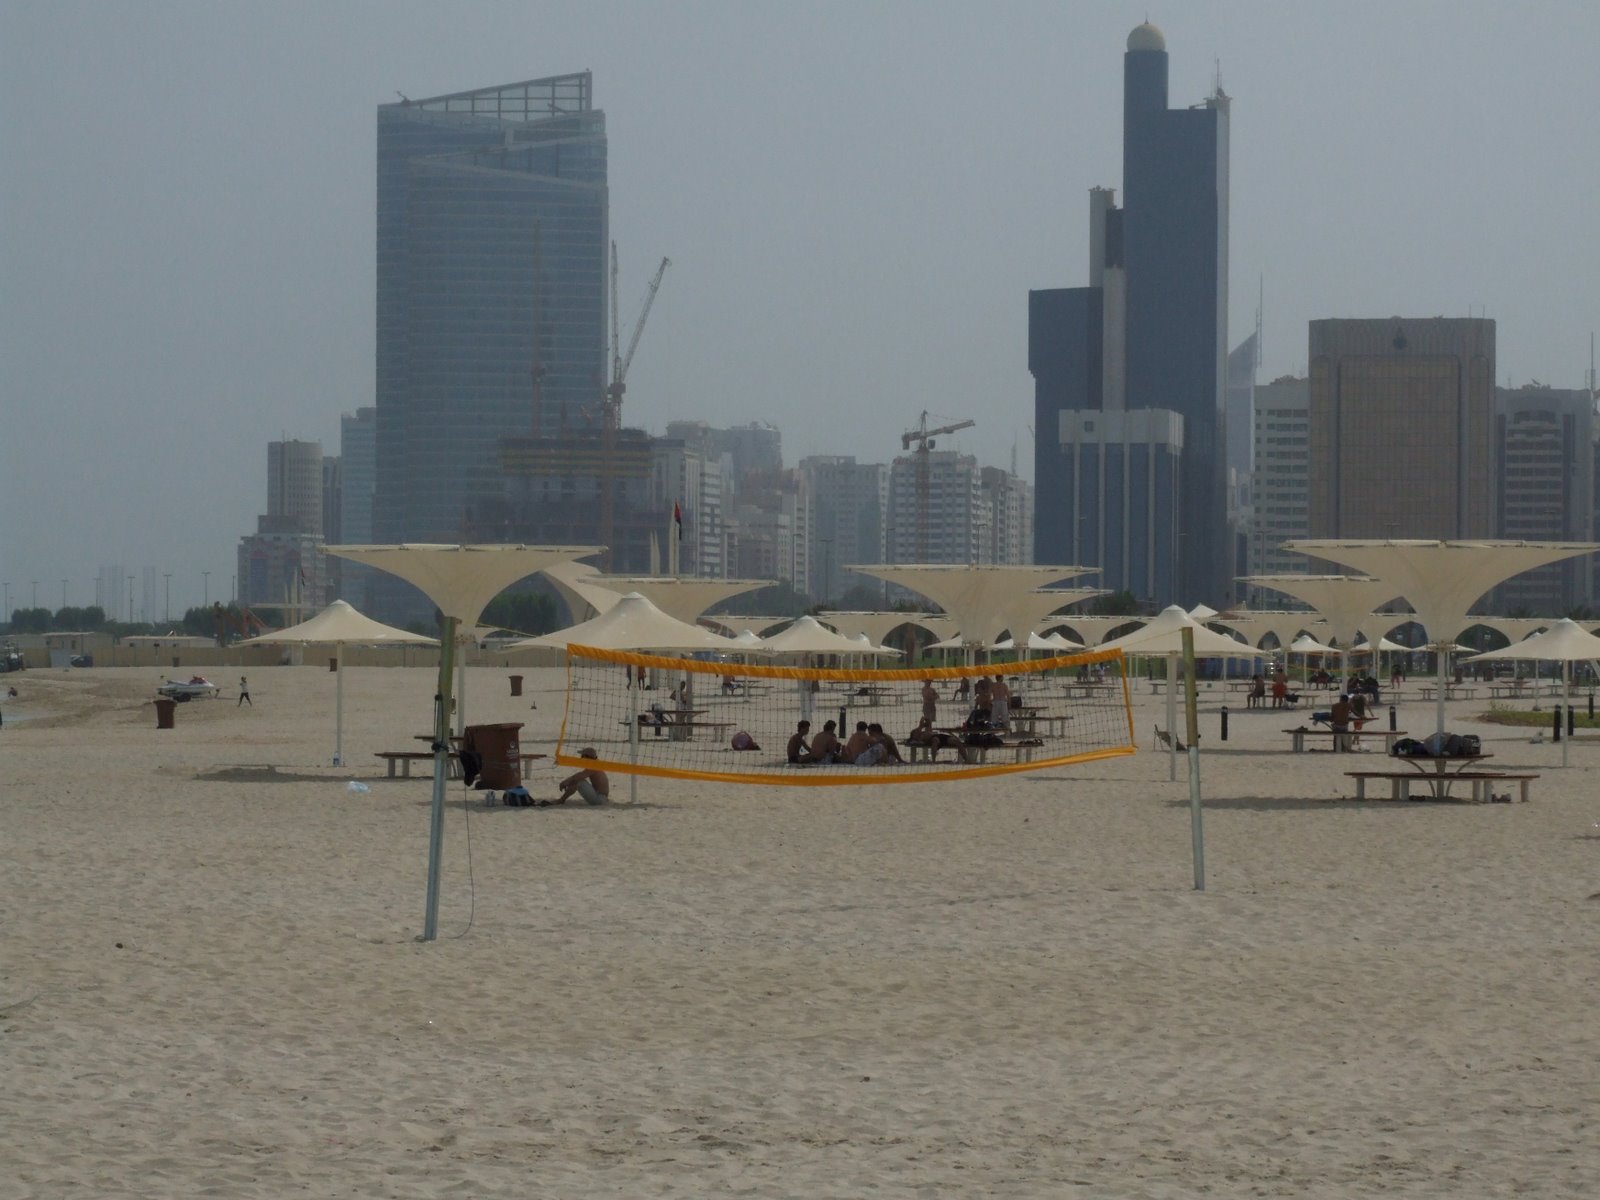 [Abu+Dhabi+Beach+3+DSCF3925.JPG]